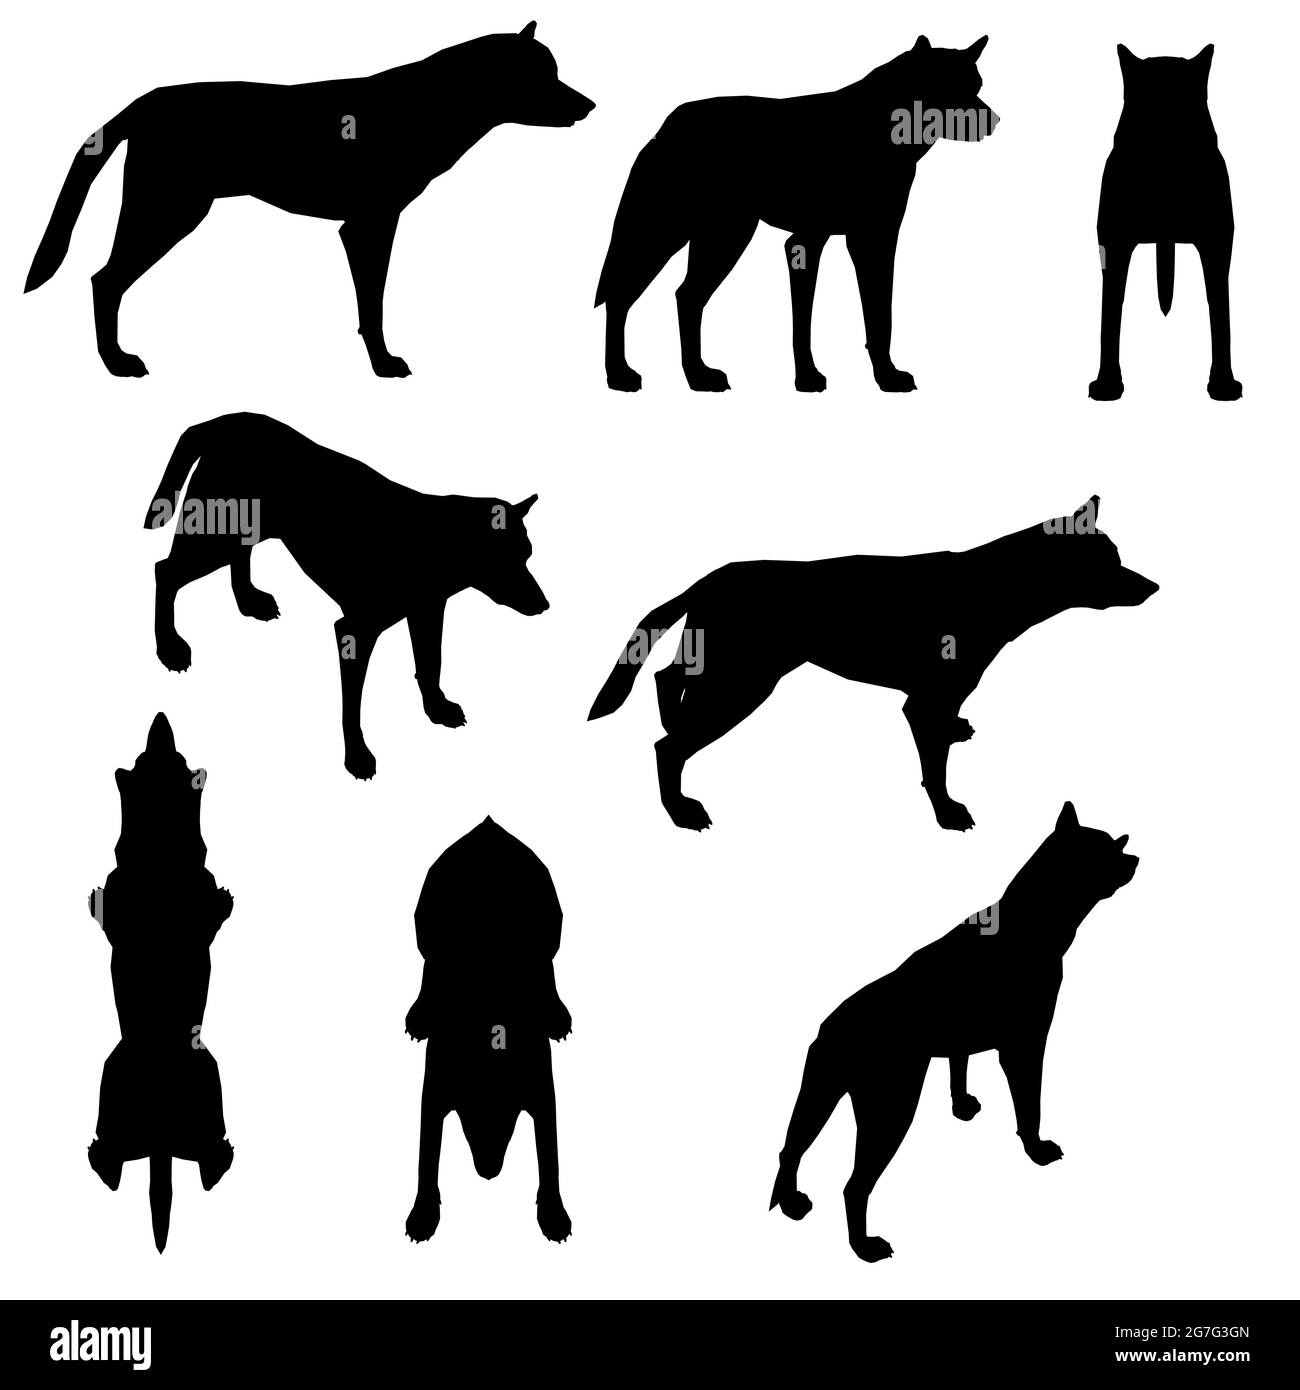 Ensemble avec silhouettes d'un chien dans différentes positions isolées sur un fond blanc. Illustration vectorielle. Illustration de Vecteur